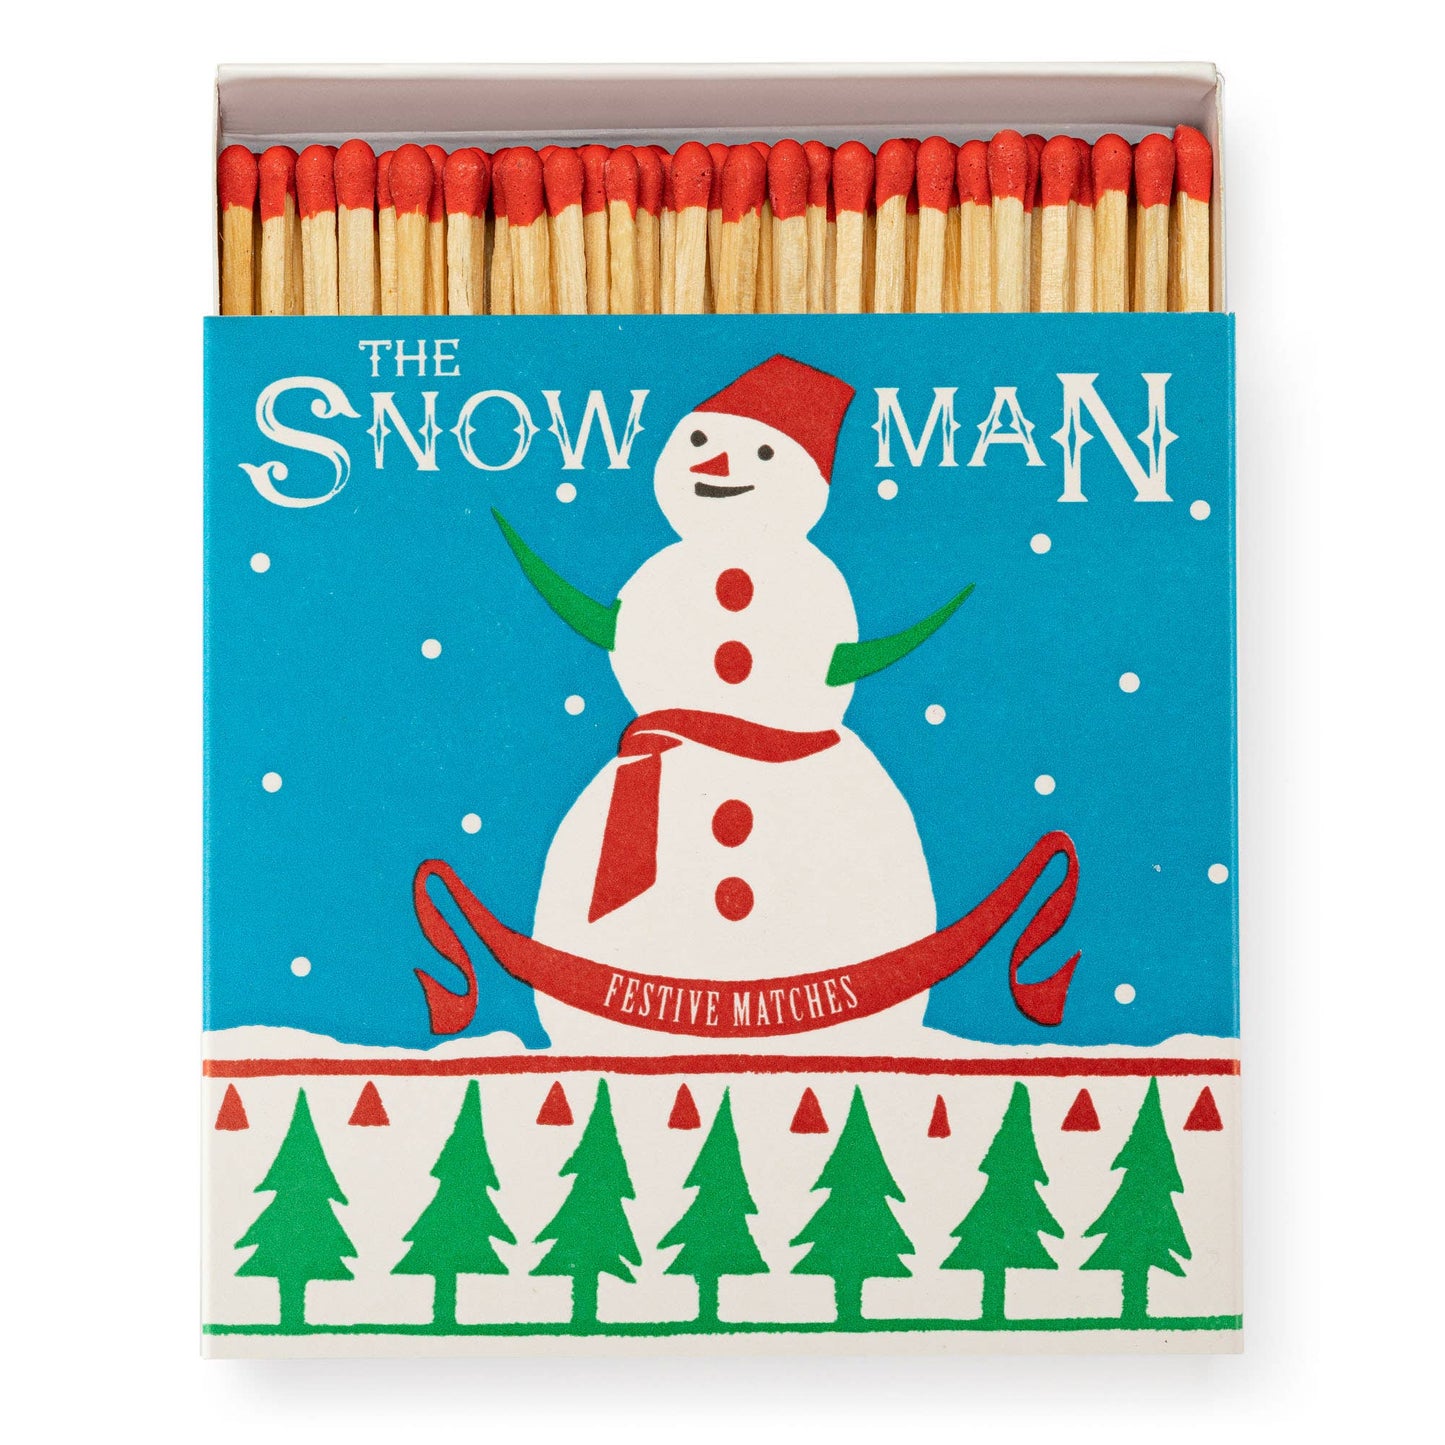 The Snowman Matchbox 🎄